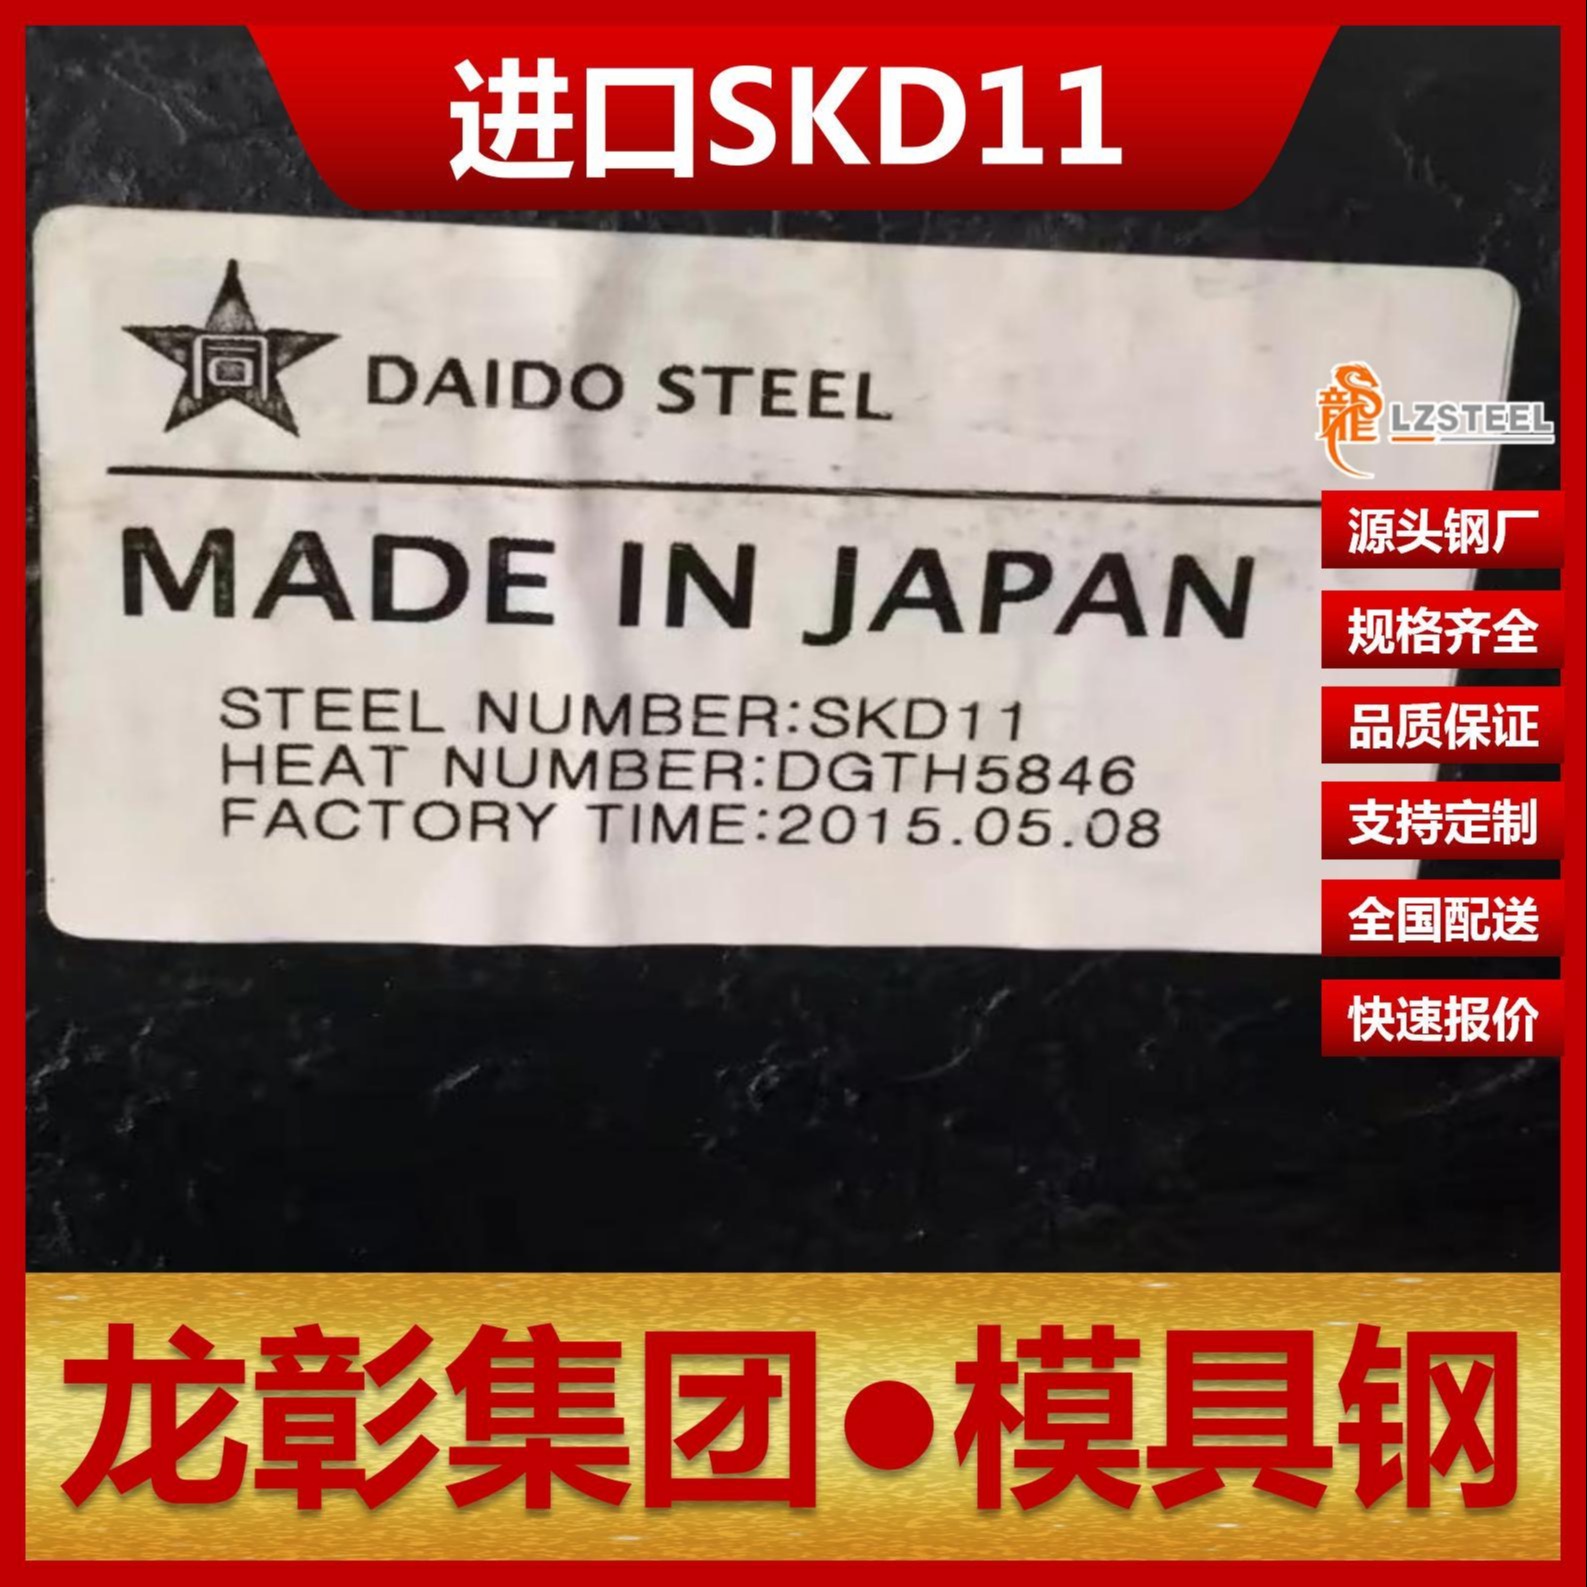 日本SKD11模具钢现货批零 龙彰集团主营SKD11扁钢圆棒模具钢图片